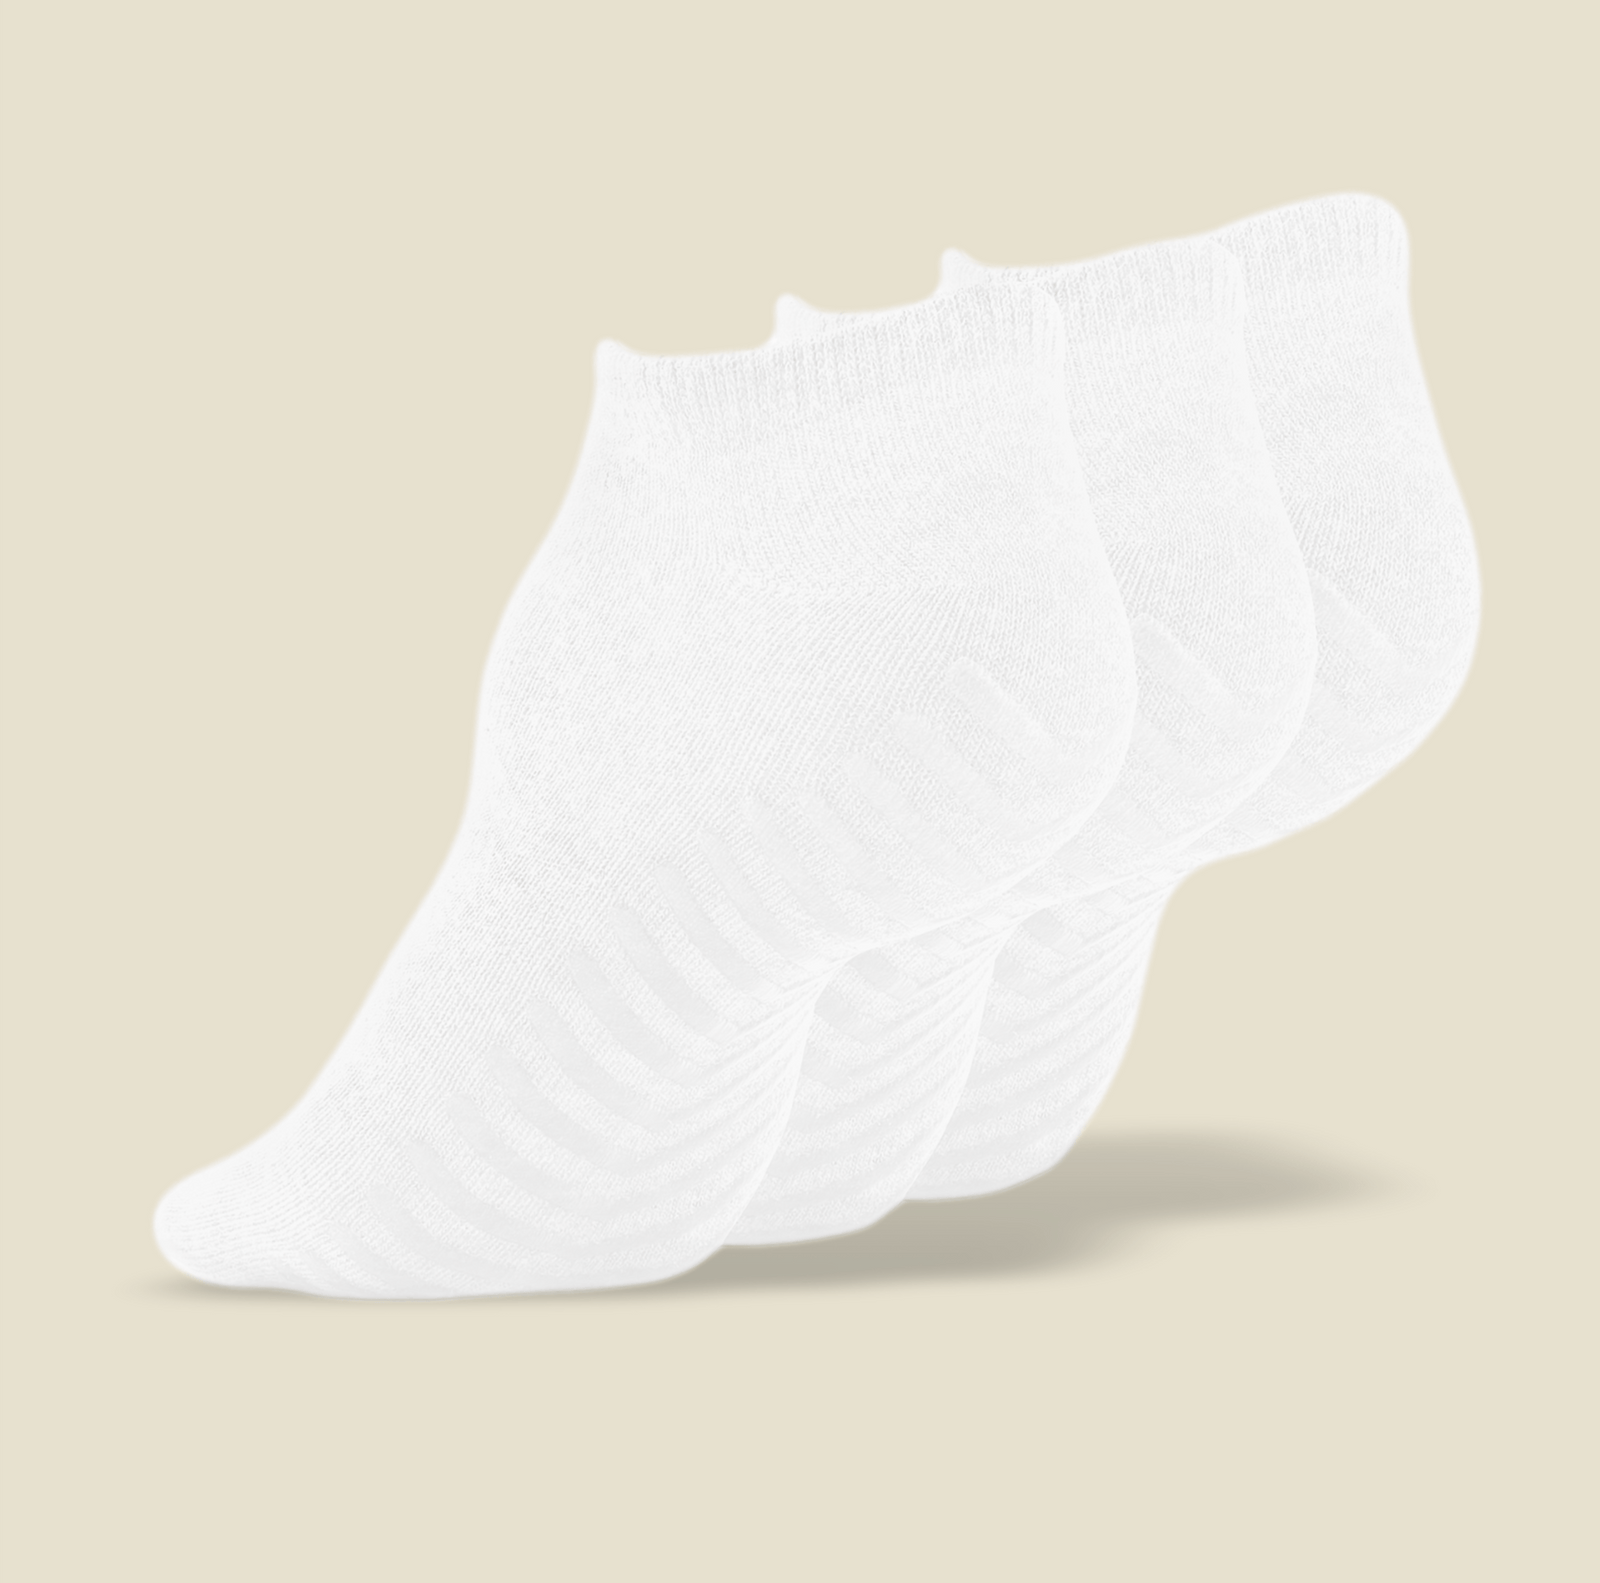 SOXPro Low Cut Grip Socks in White